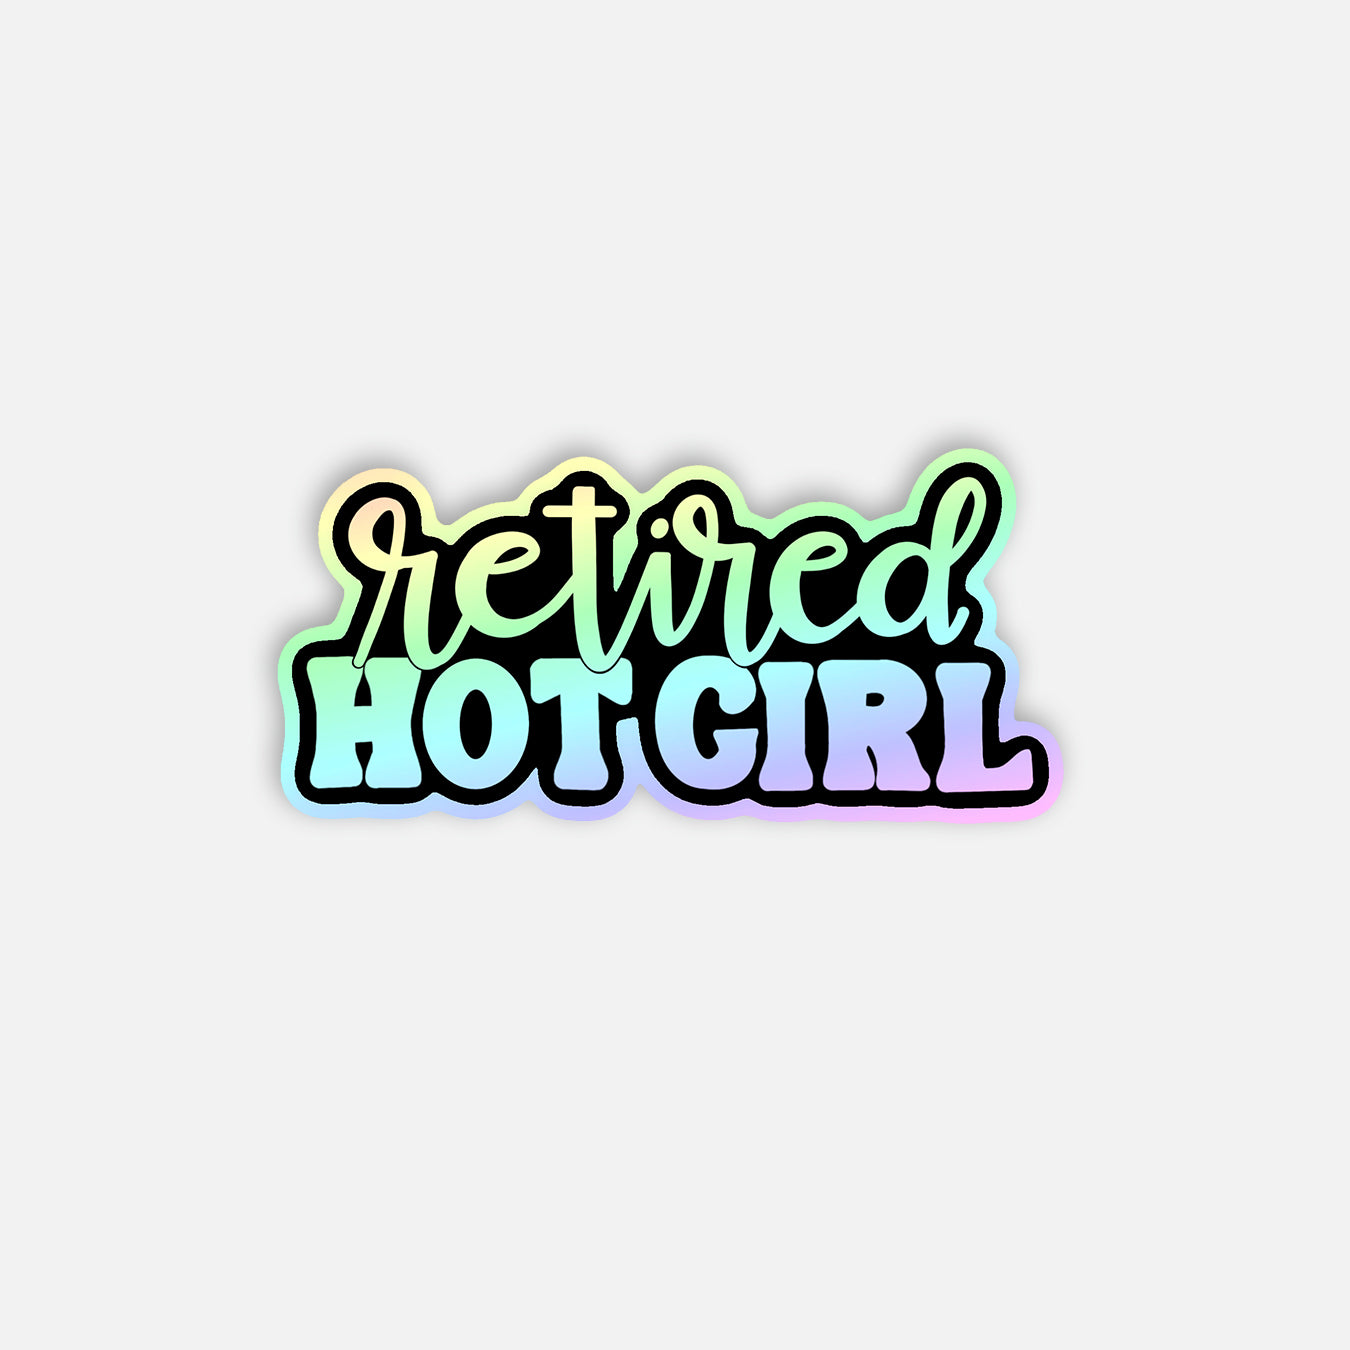 Retired Hot Girl Holographic Vinyl Sticker